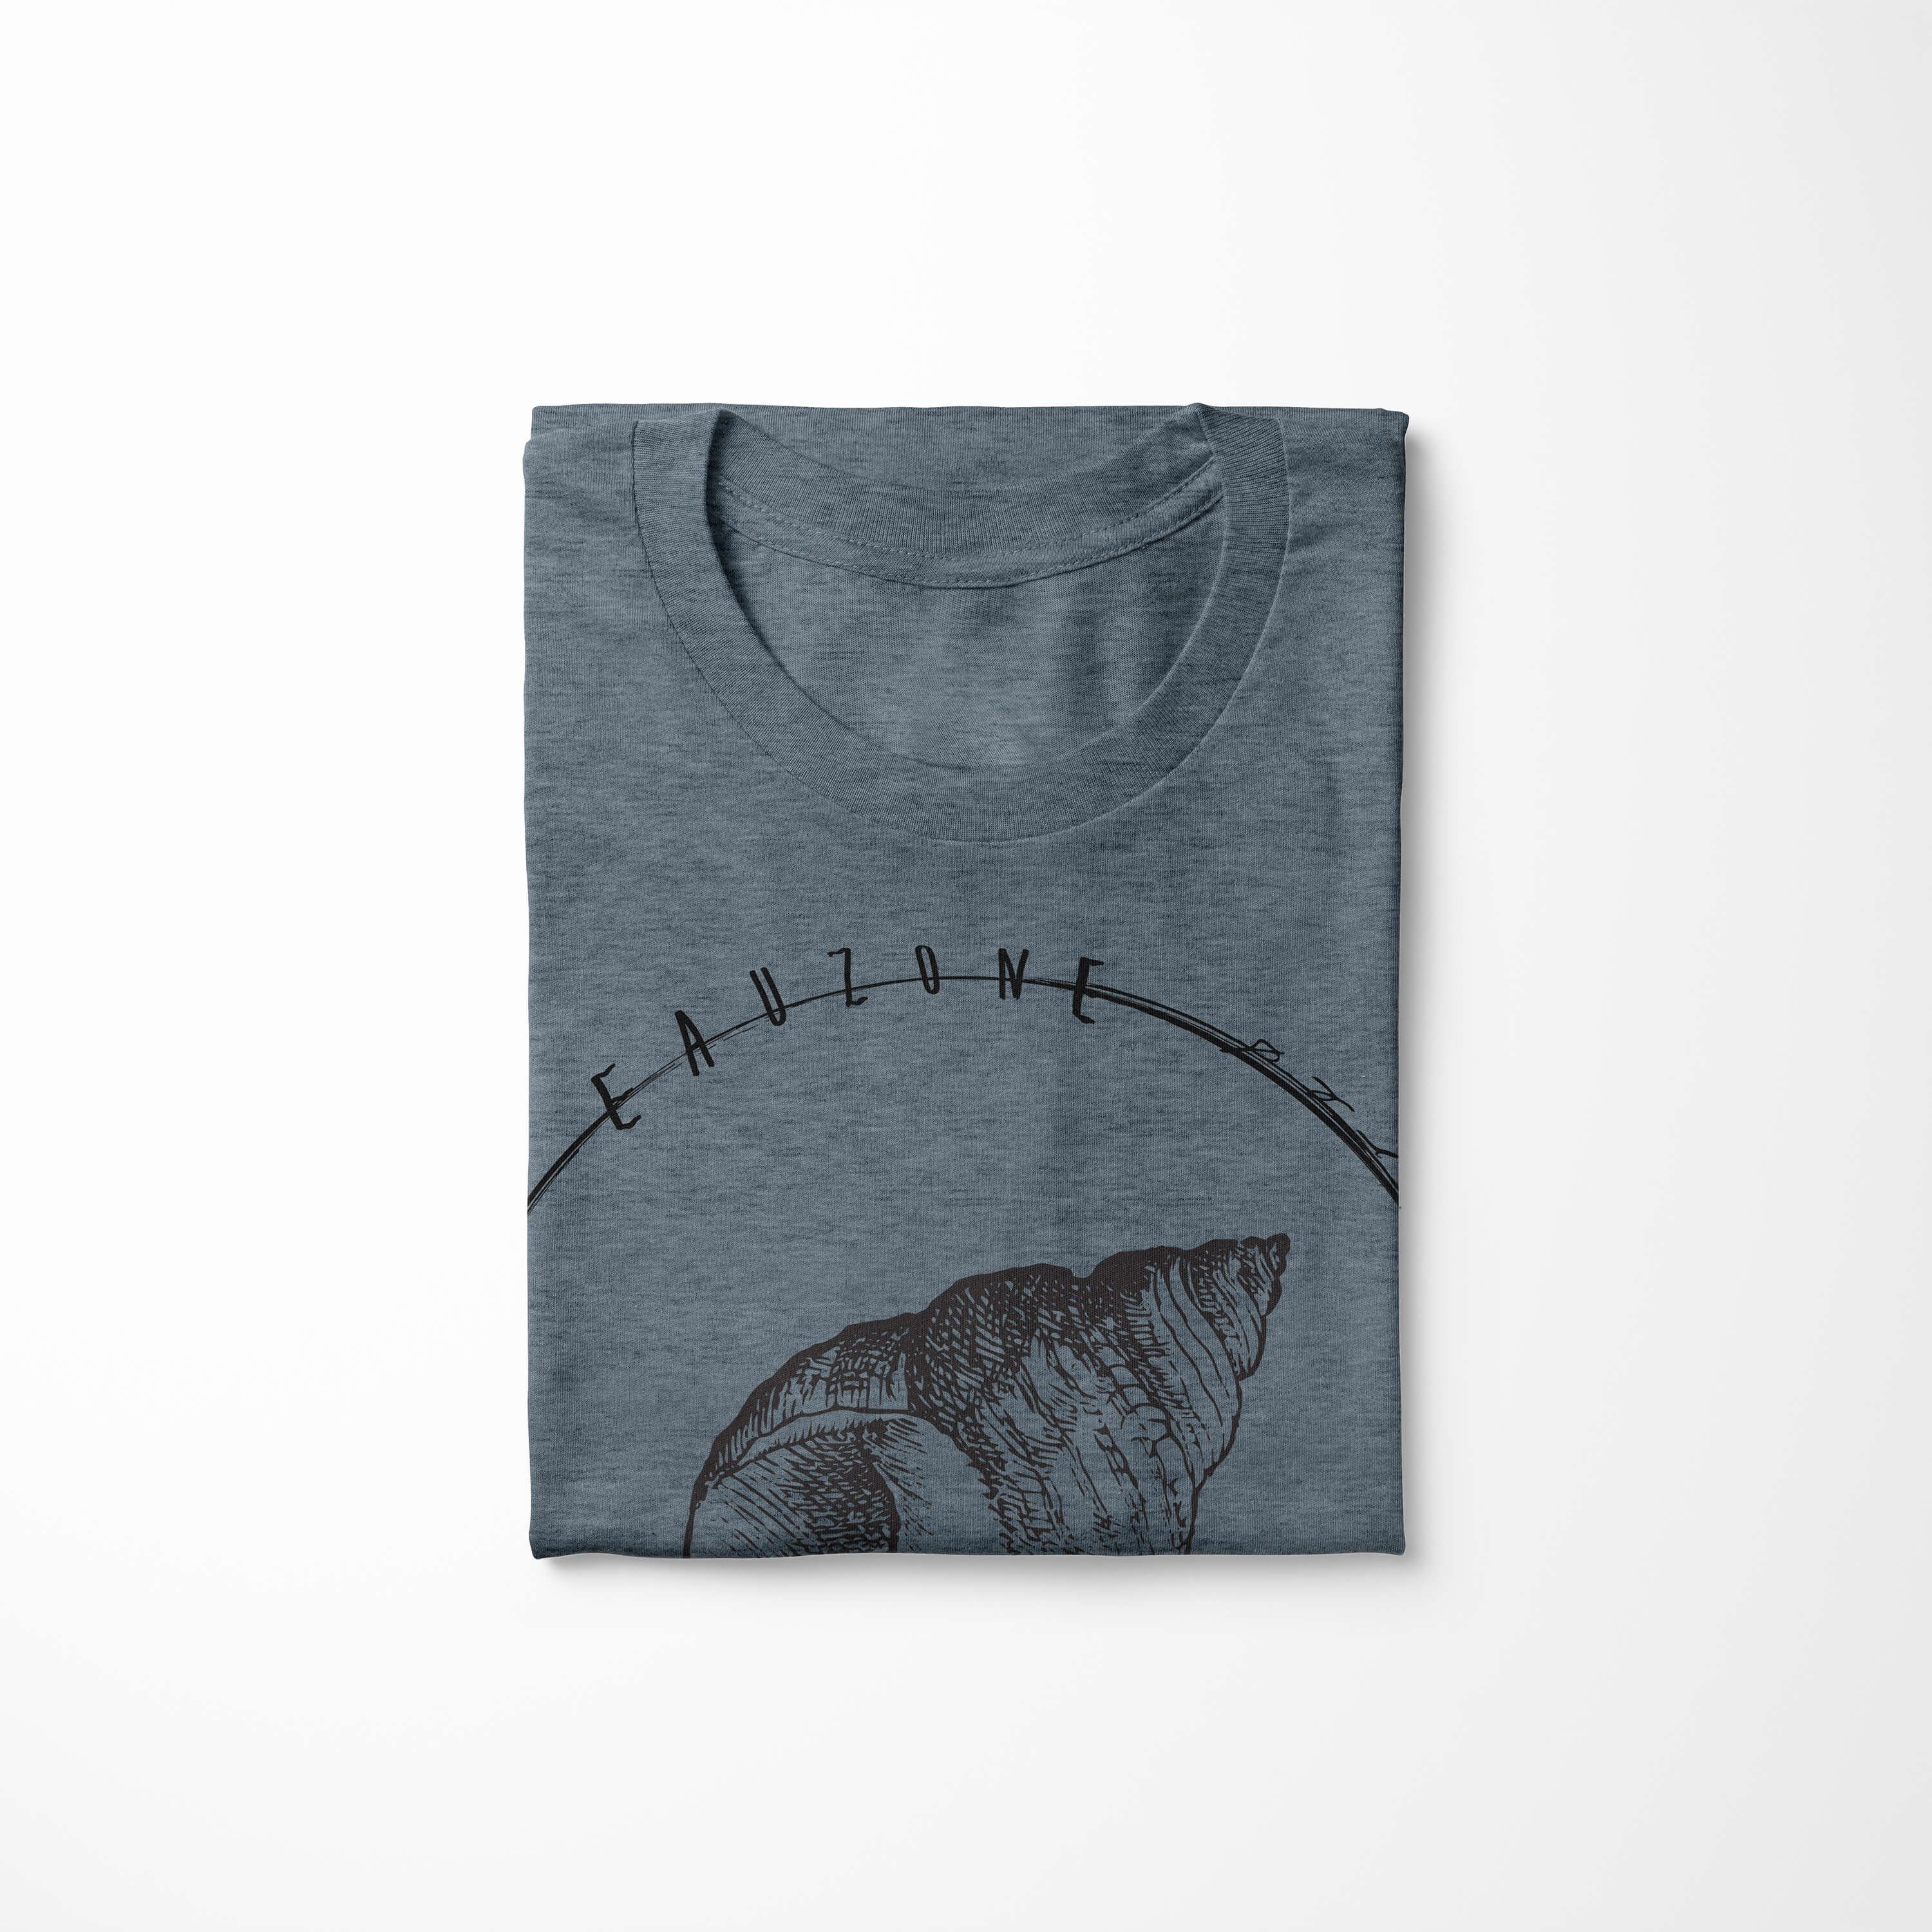 Struktur und Sinus Serie: Sea T-Shirt Creatures, - sportlicher T-Shirt Indigo Art Fische Tiefsee Schnitt Sea / 025 feine